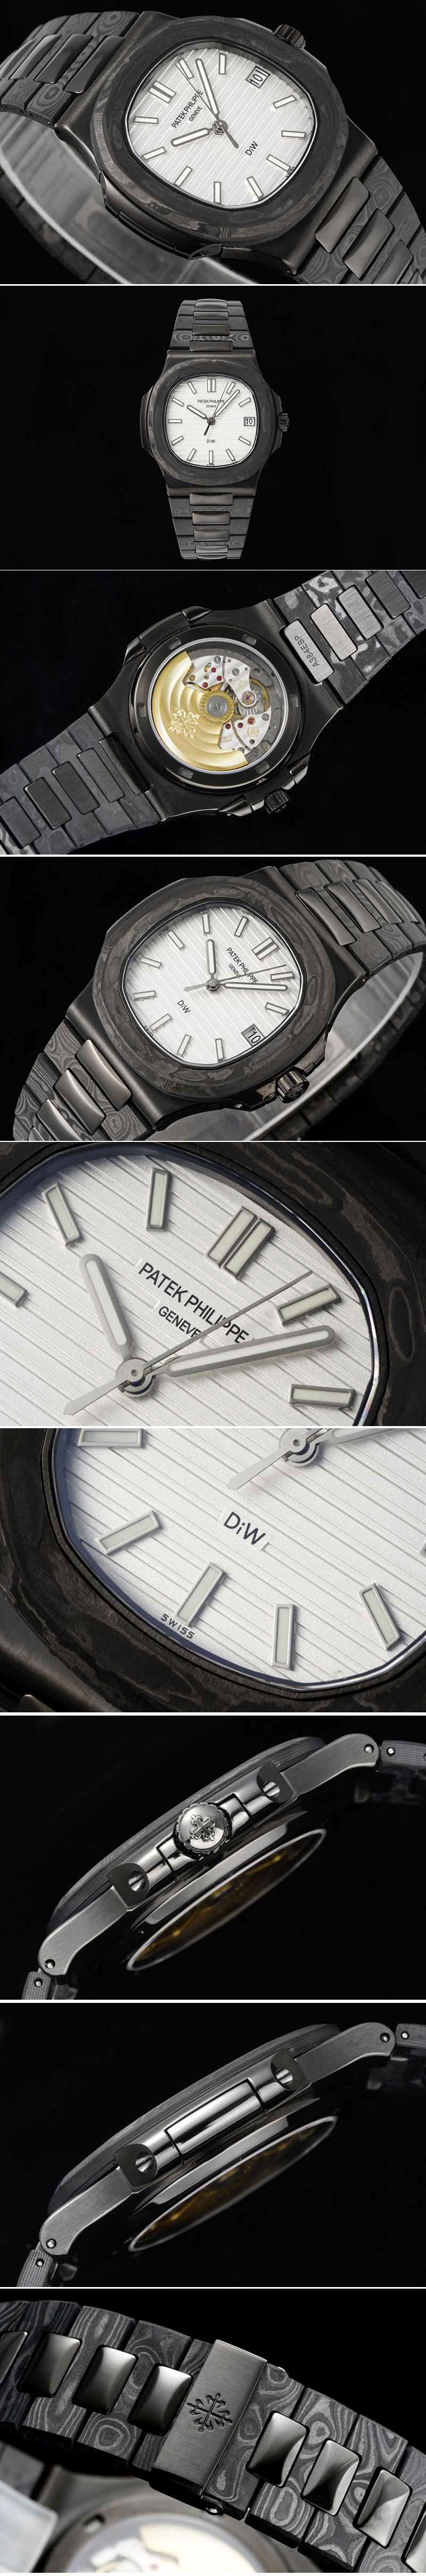 Replica Patek Philippe Nautilus 5711 DIW Carbon DIWF 1:1 Best Edition Silver Textured Dial on Carbon/PVD Bracelet 324CS